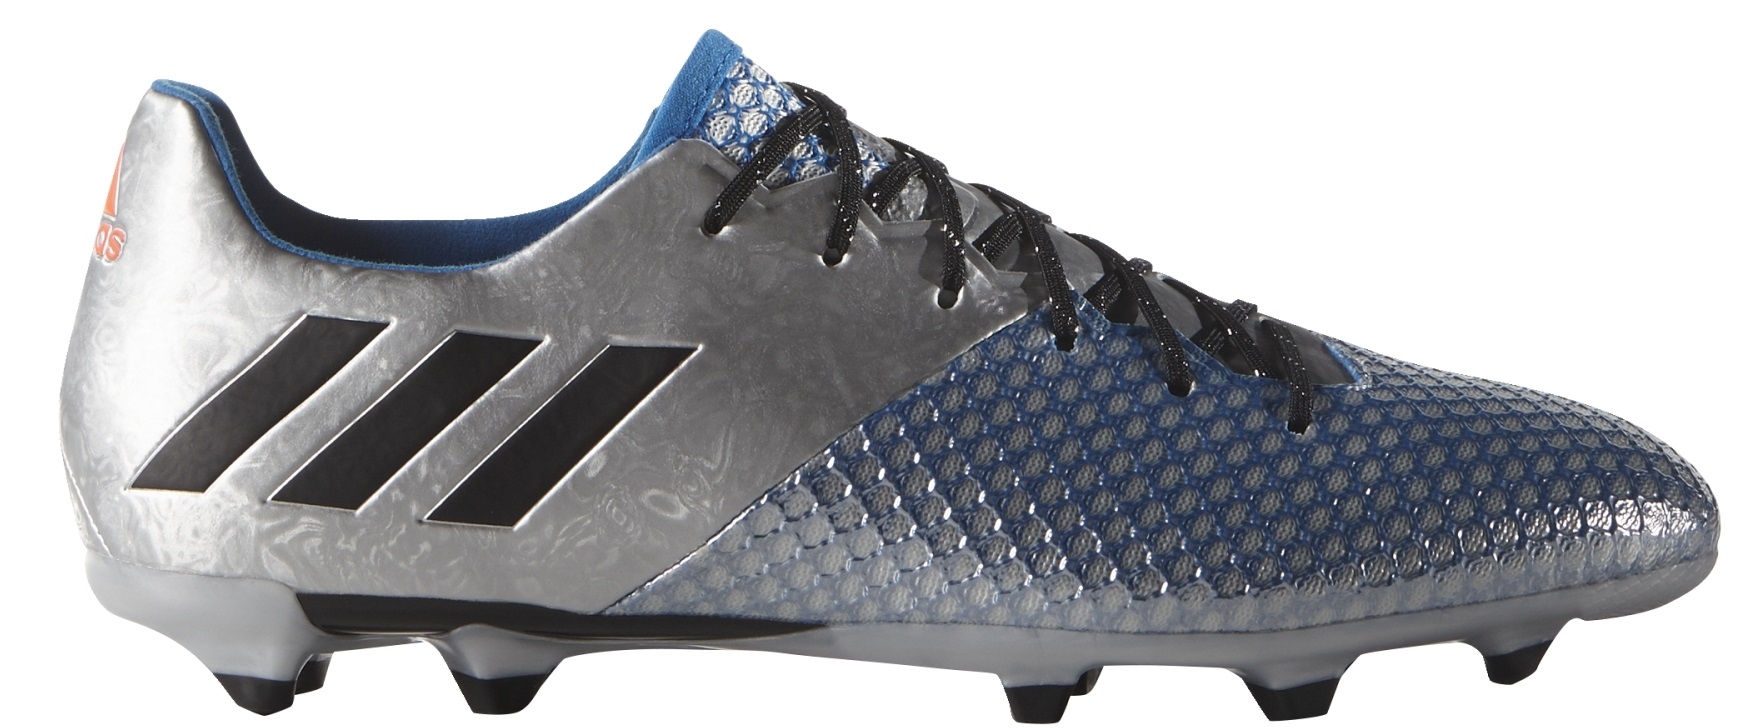 Zapatos de Fútbol Adidas Messi FG colore gris azul - Adidas - SportIT.com